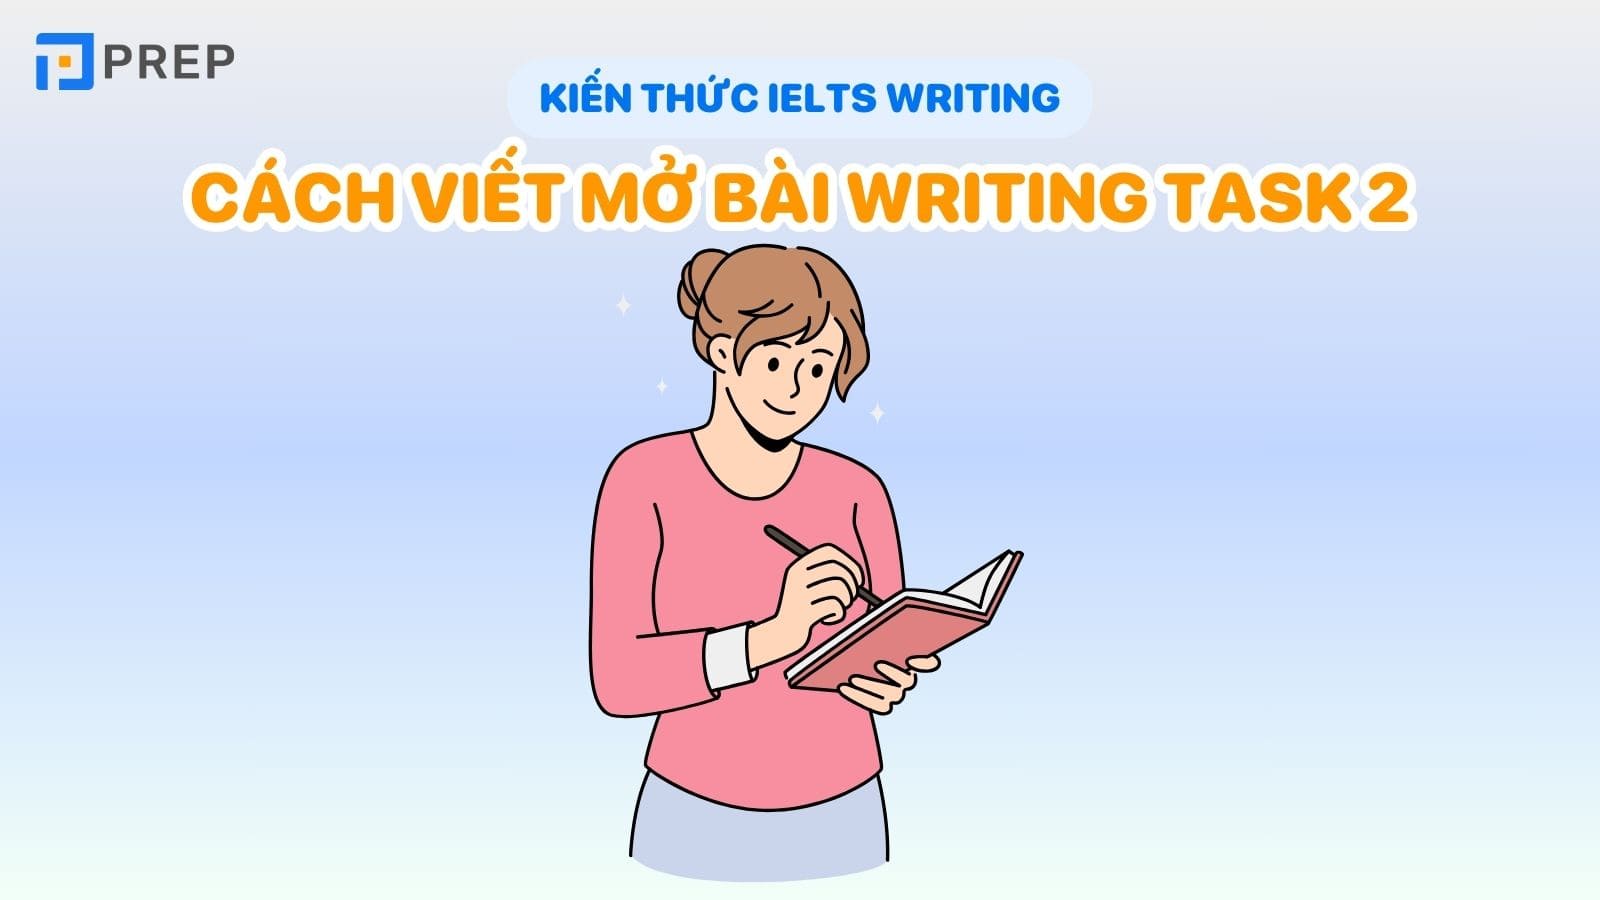 cach-viet-mo-bai-writing-task-2.jpg